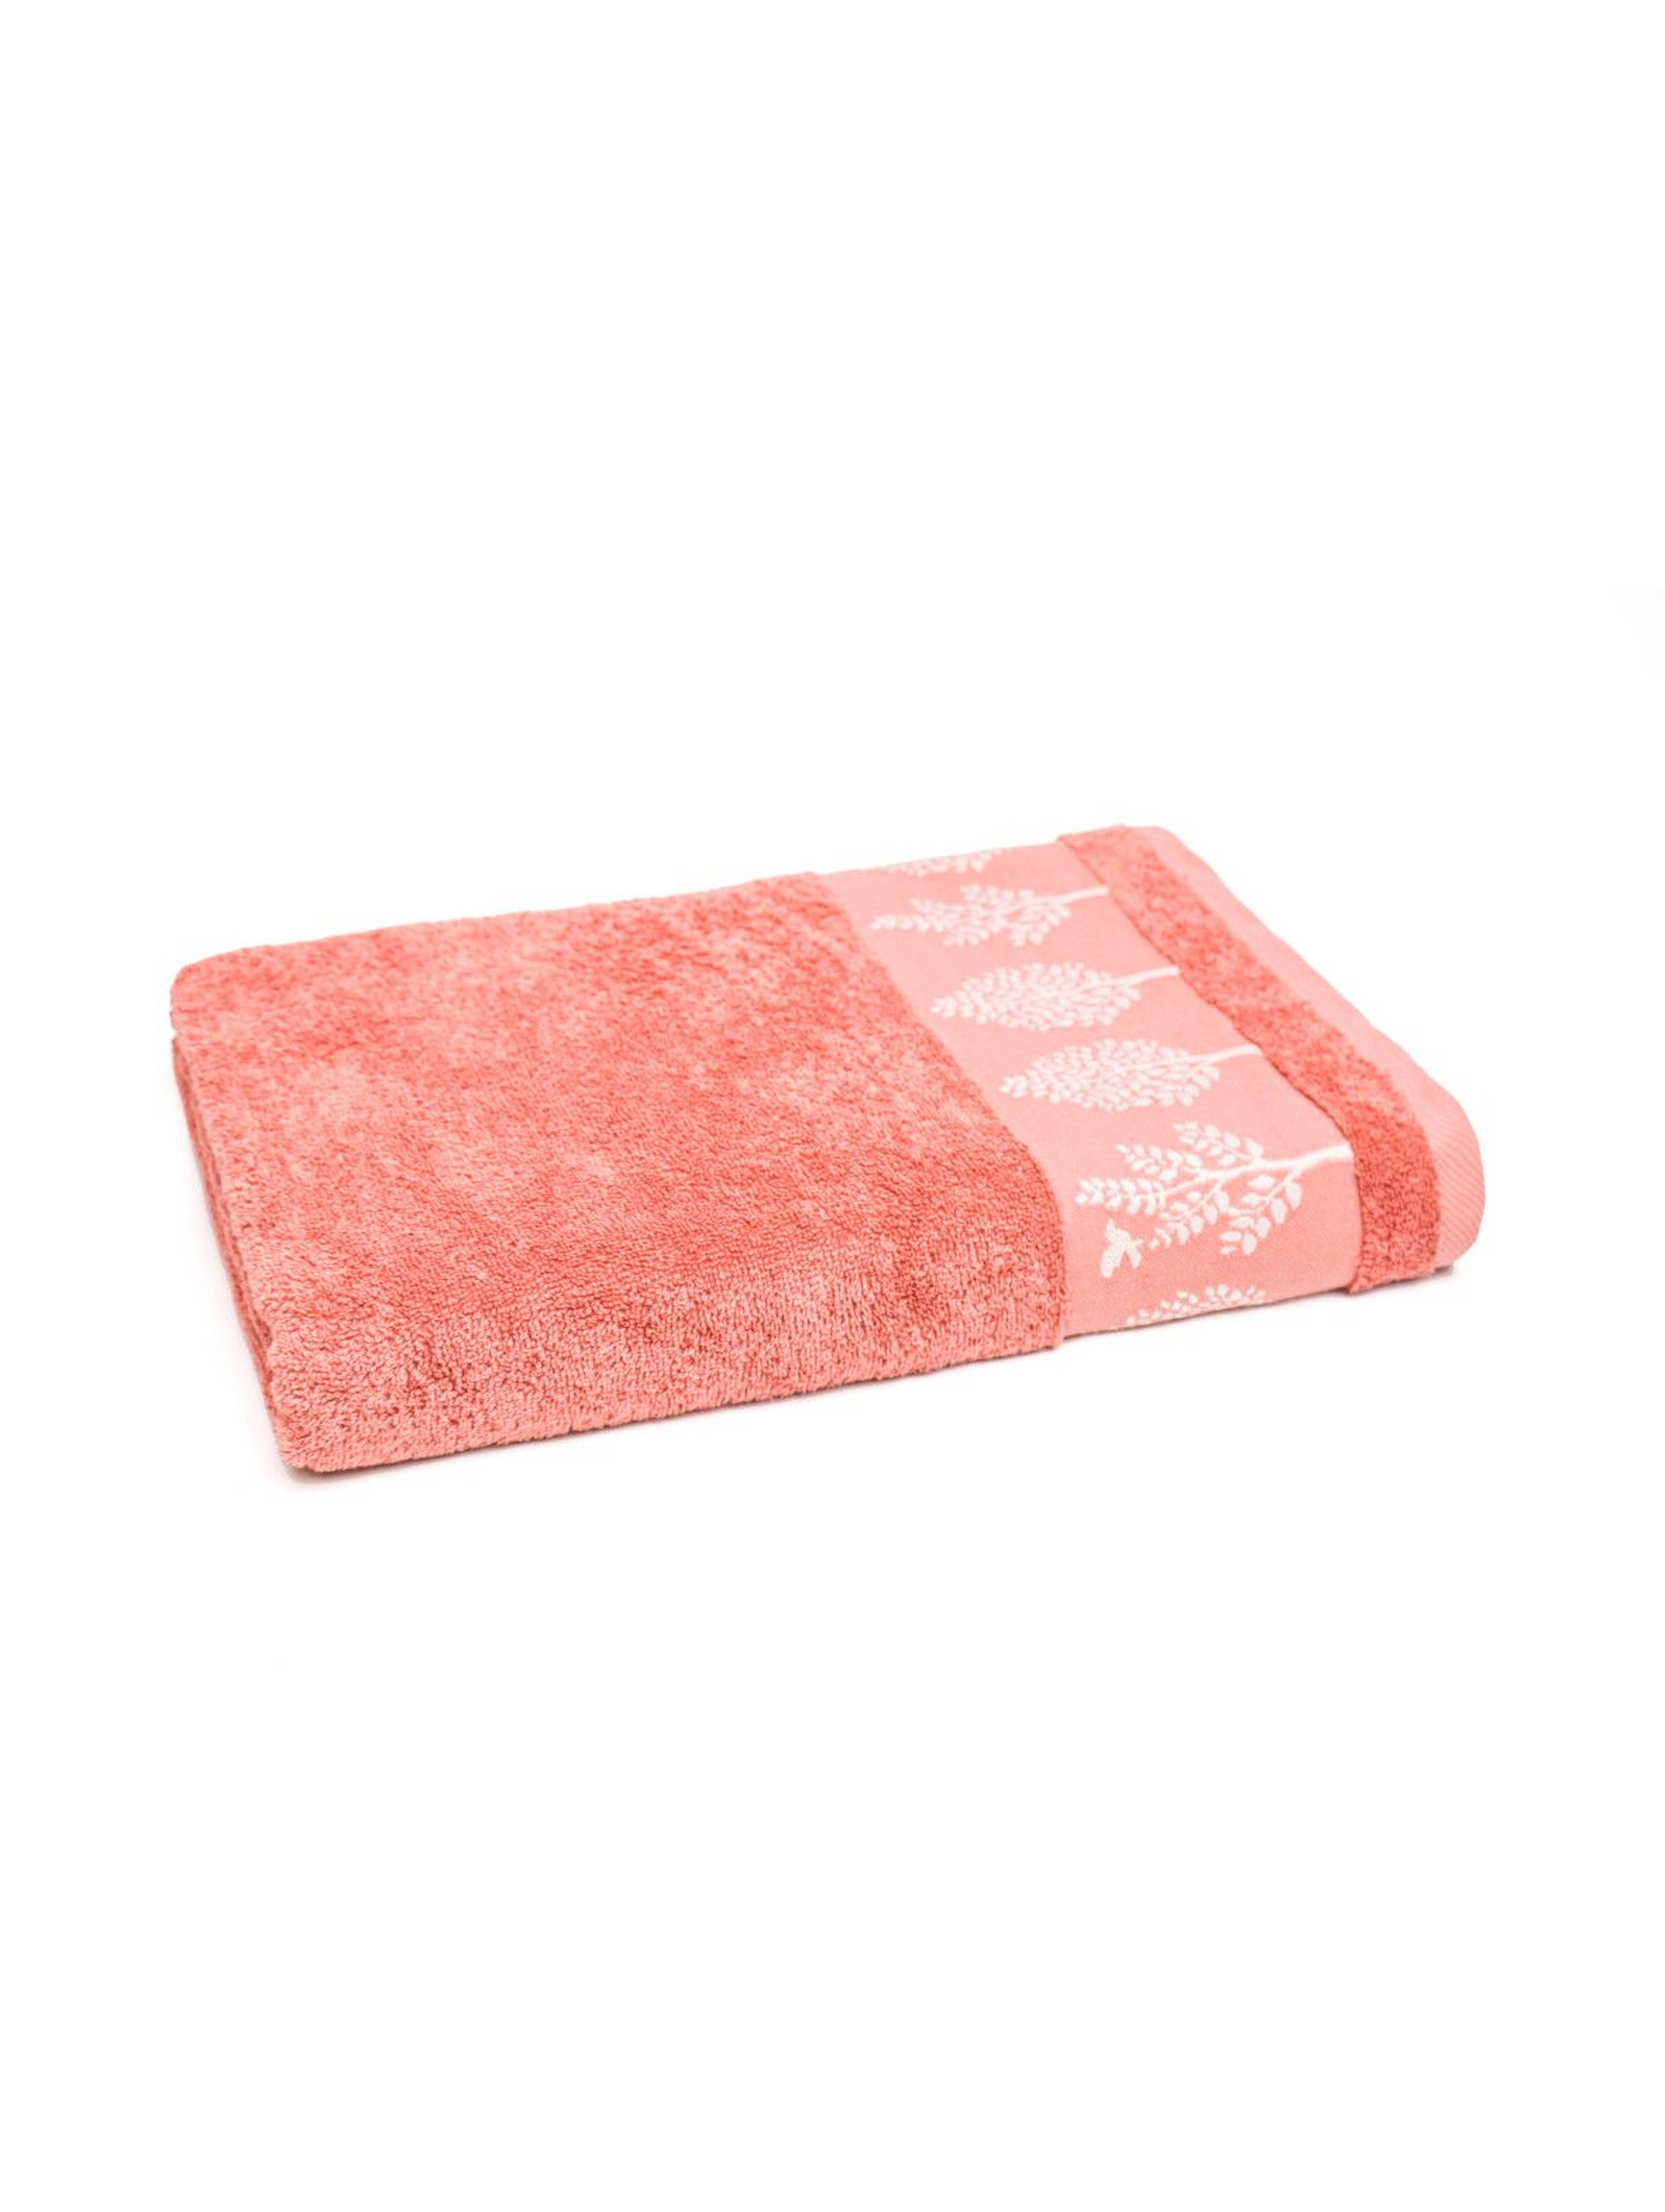 Bawełniany ręcznik w kolorze łososiowym 50x90 cm